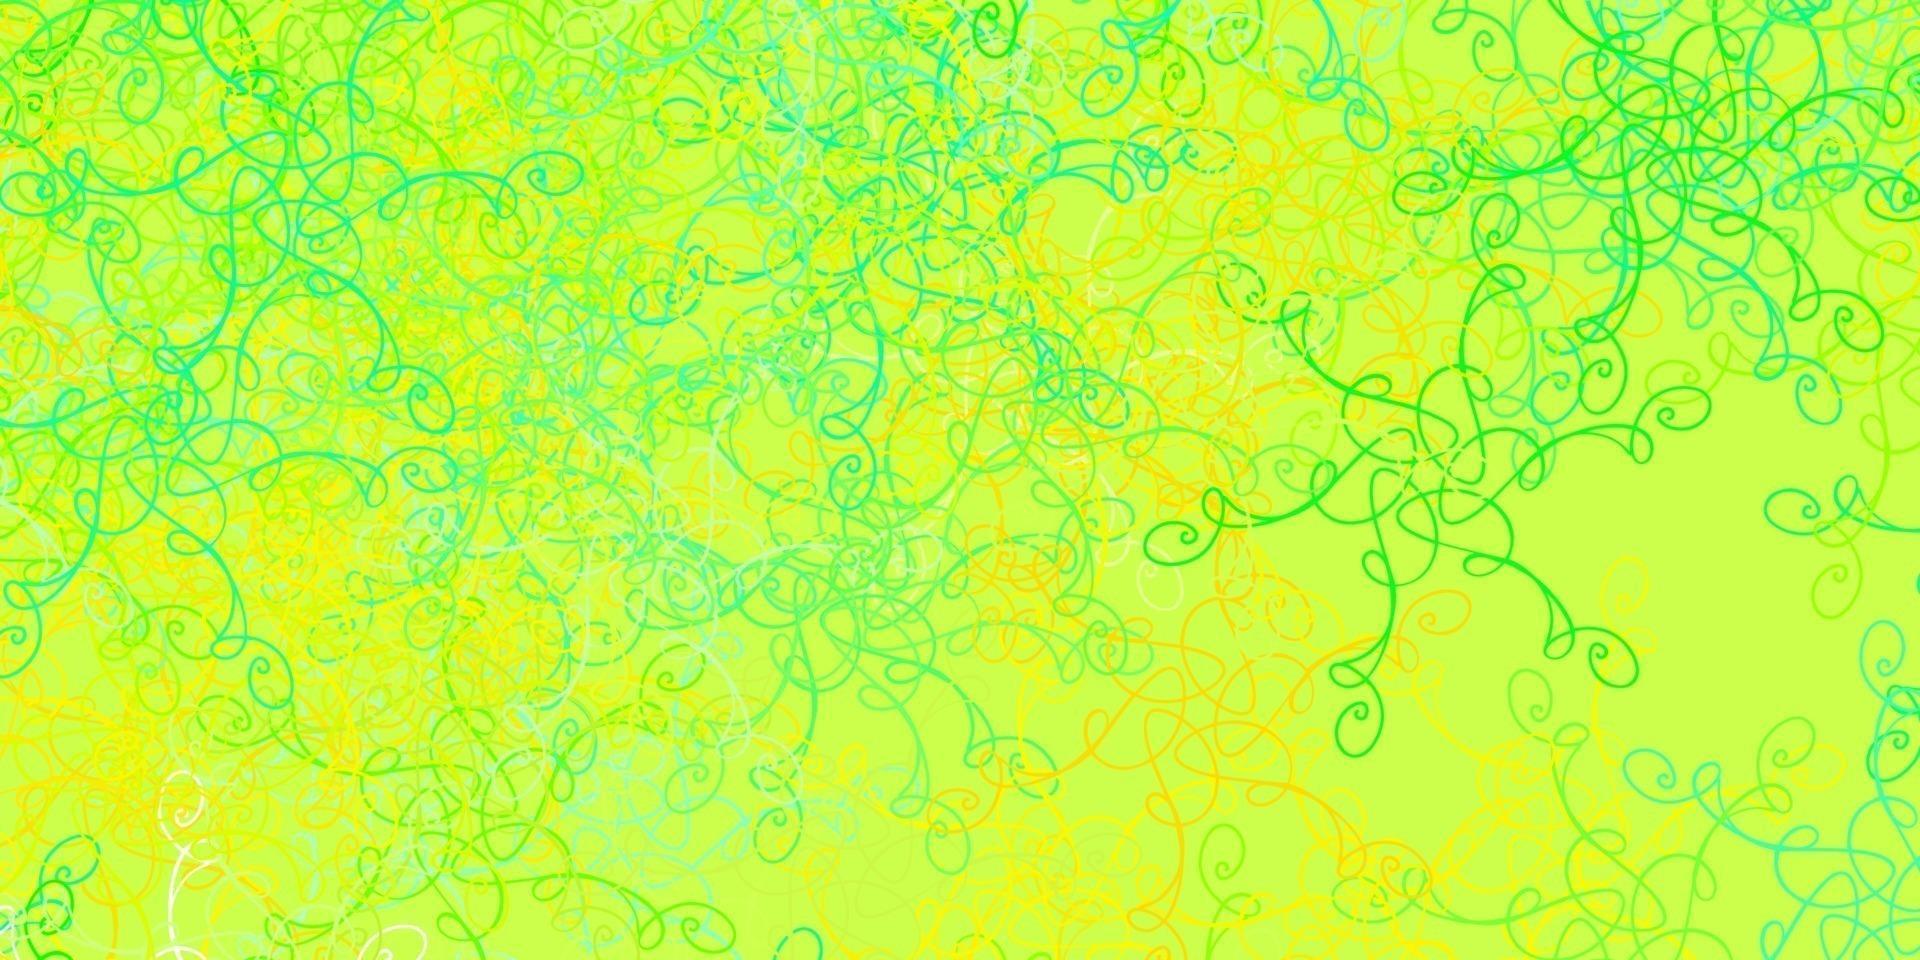 ljusgrönt, gult vektormönster med sneda linjer. vektor